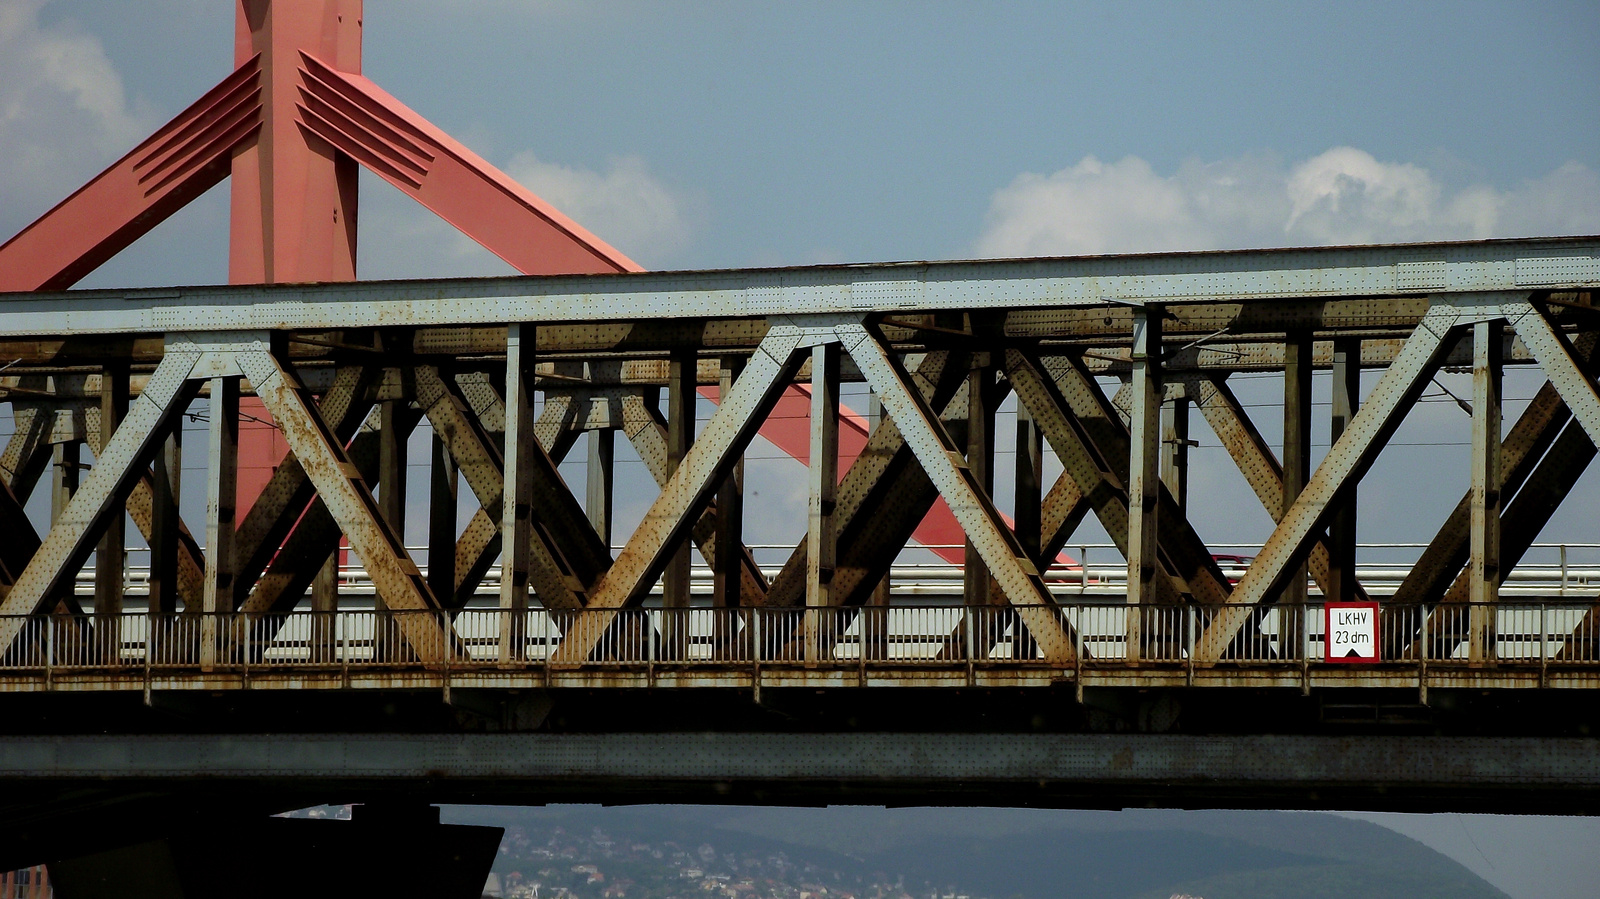 | Elkeveredett fotók #10 - Lágymányosi híd, A másik oldal |